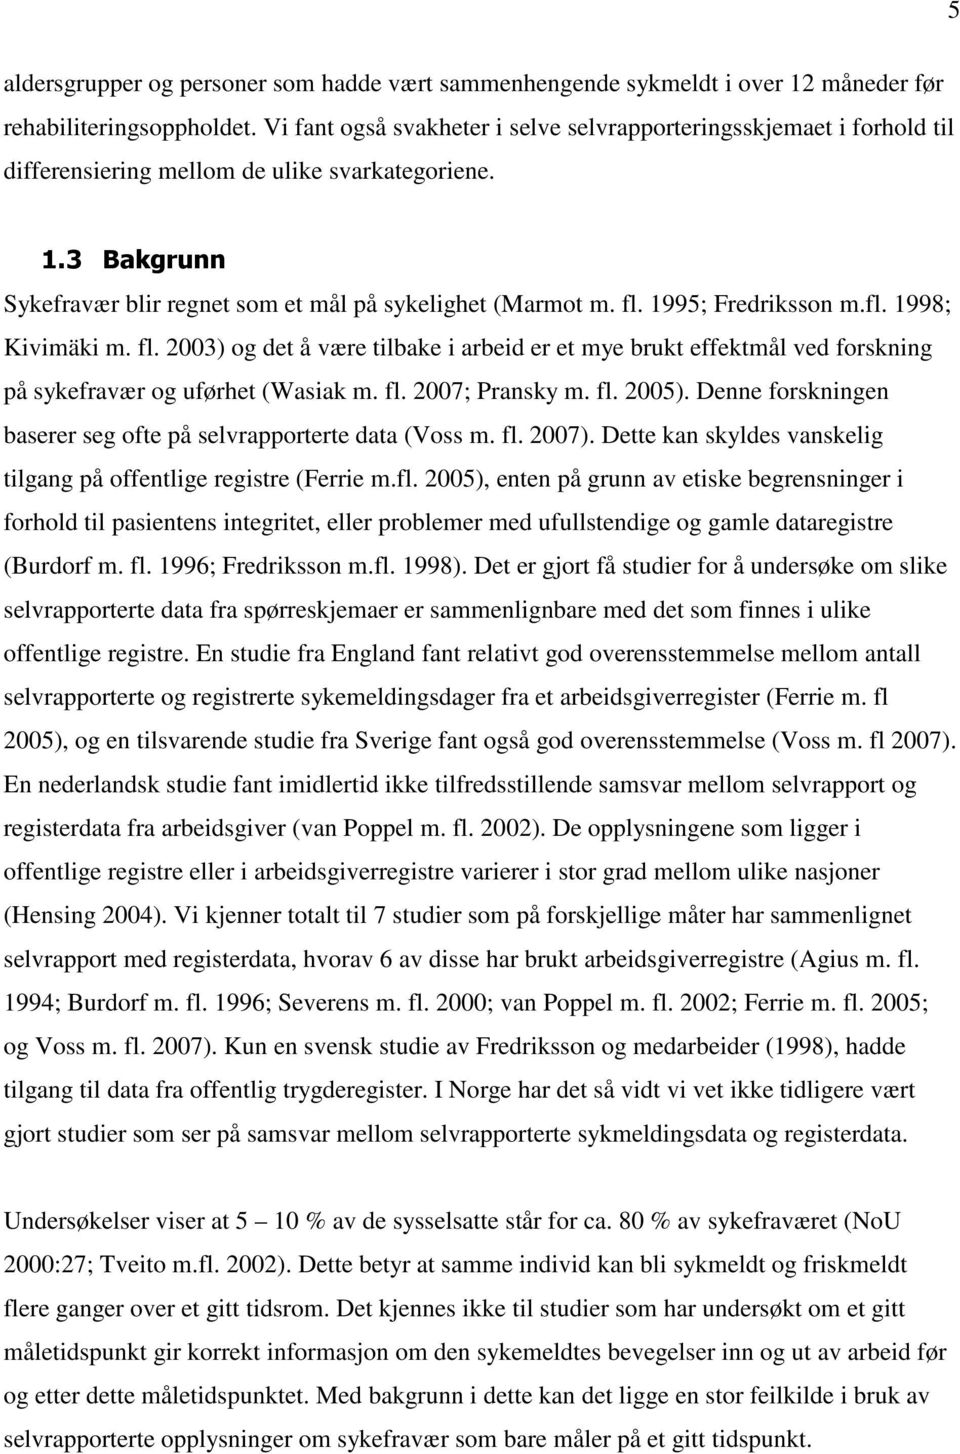 1995; Fredriksson m.fl. 1998; Kivimäki m. fl. 2003) og det å være tilbake i arbeid er et mye brukt effektmål ved forskning på sykefravær og uførhet (Wasiak m. fl. 2007; Pransky m. fl. 2005).